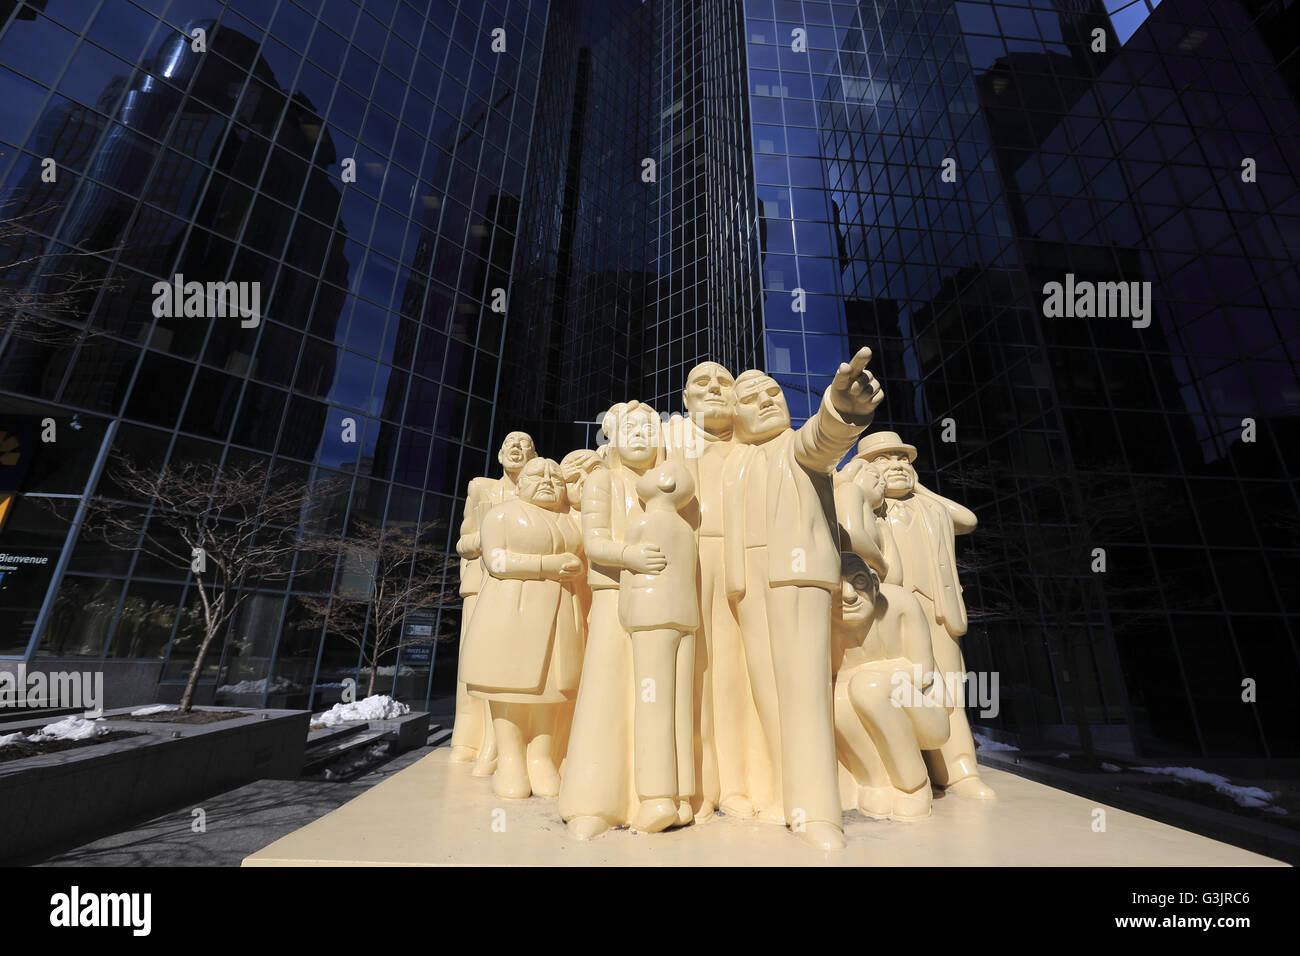 La sculpture la foule illuminée de à Montréal. Québec, Canada Banque D'Images